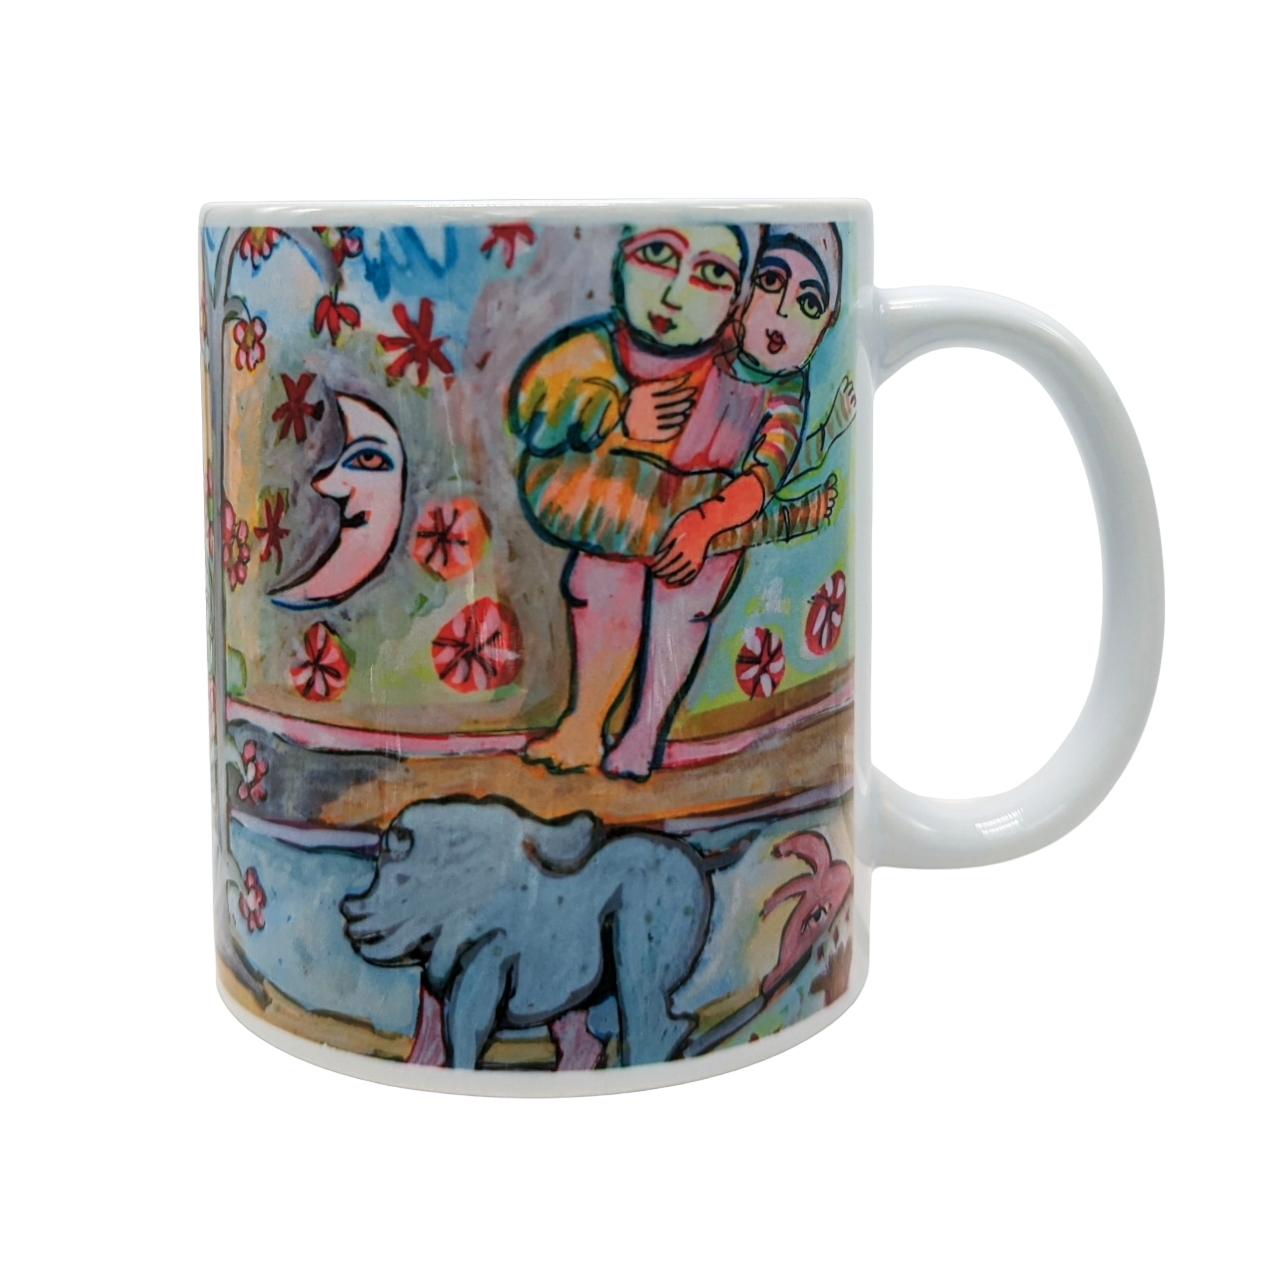 Mirka Mora Coloured Mug